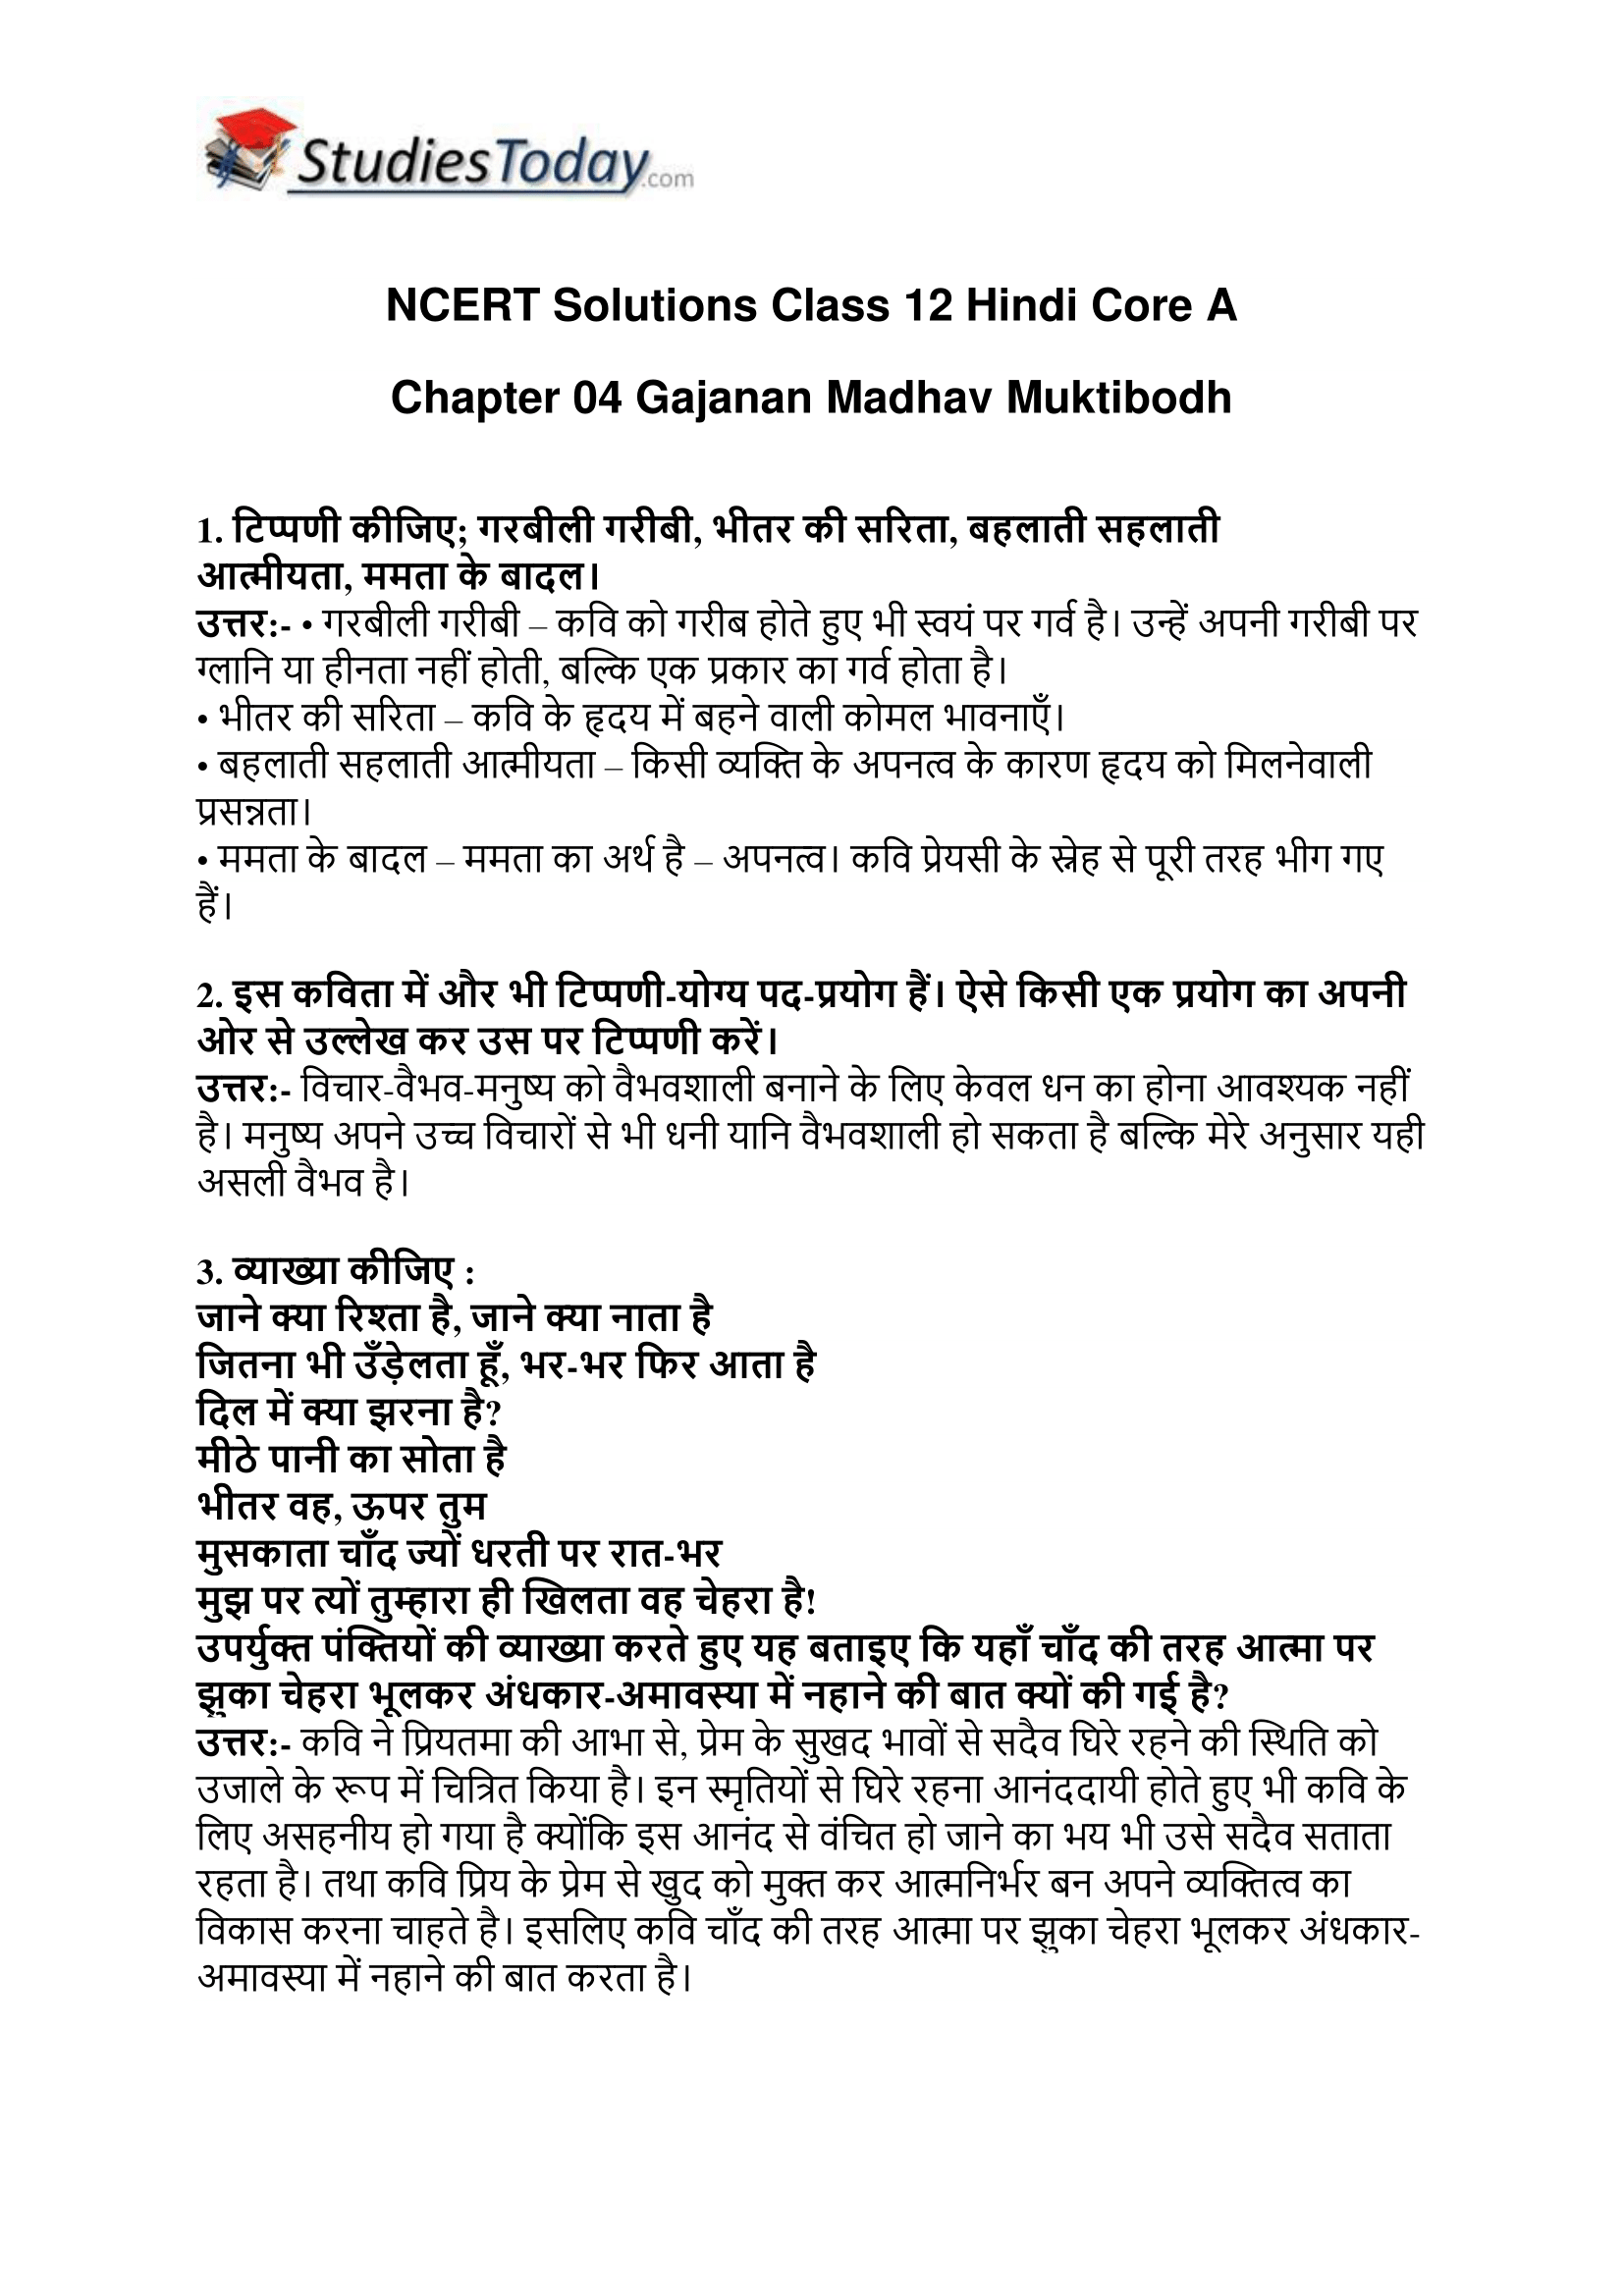 ncert-solutions-class-12-hindi-core-a-chapter-5-gajanan-madhav-muktibodh-1